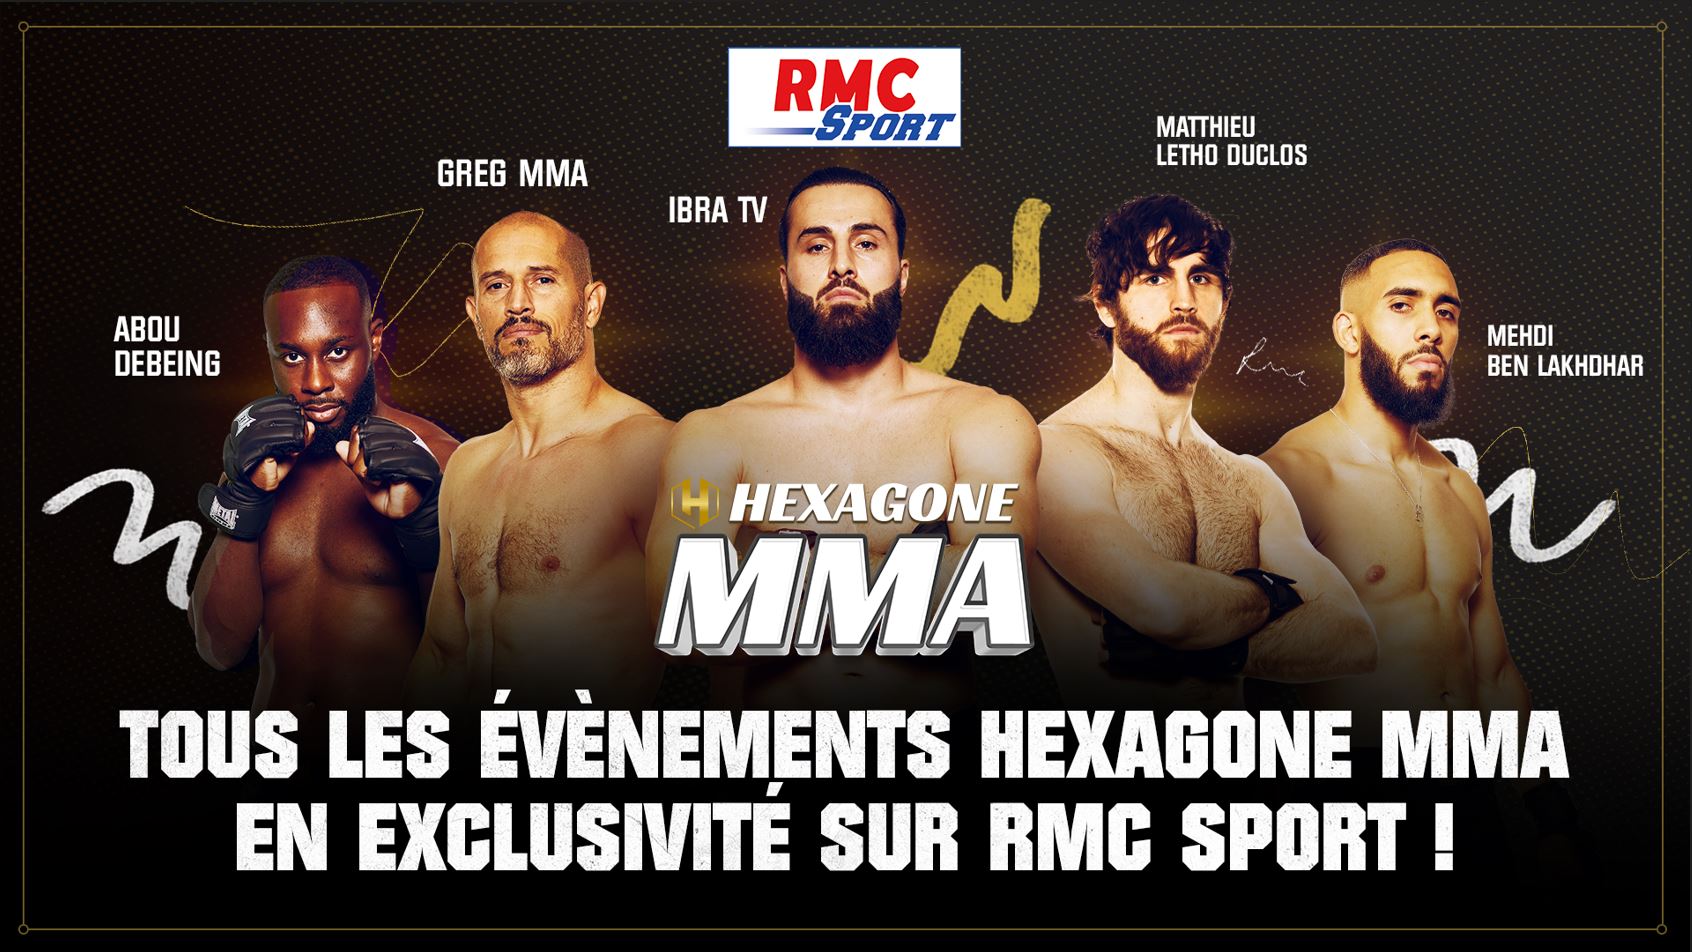 la Ligue Hexagone MMA à suivre en exclusivité sur RMC Sport